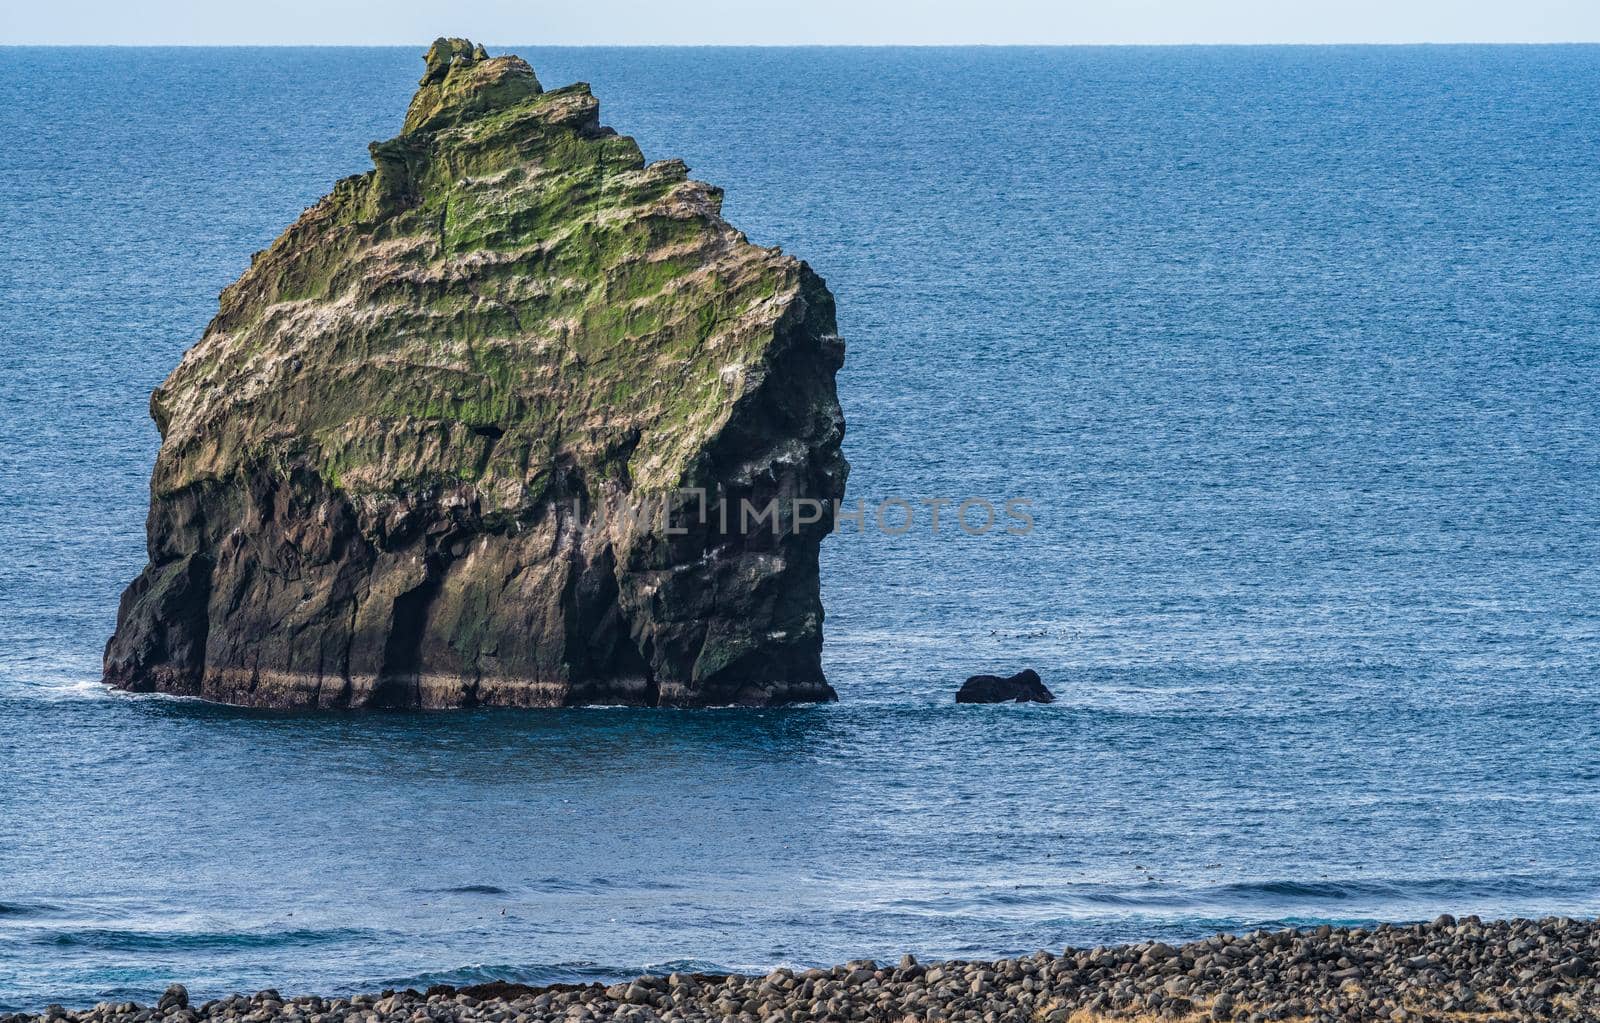 Huge boulder near the coastline with huge ocean